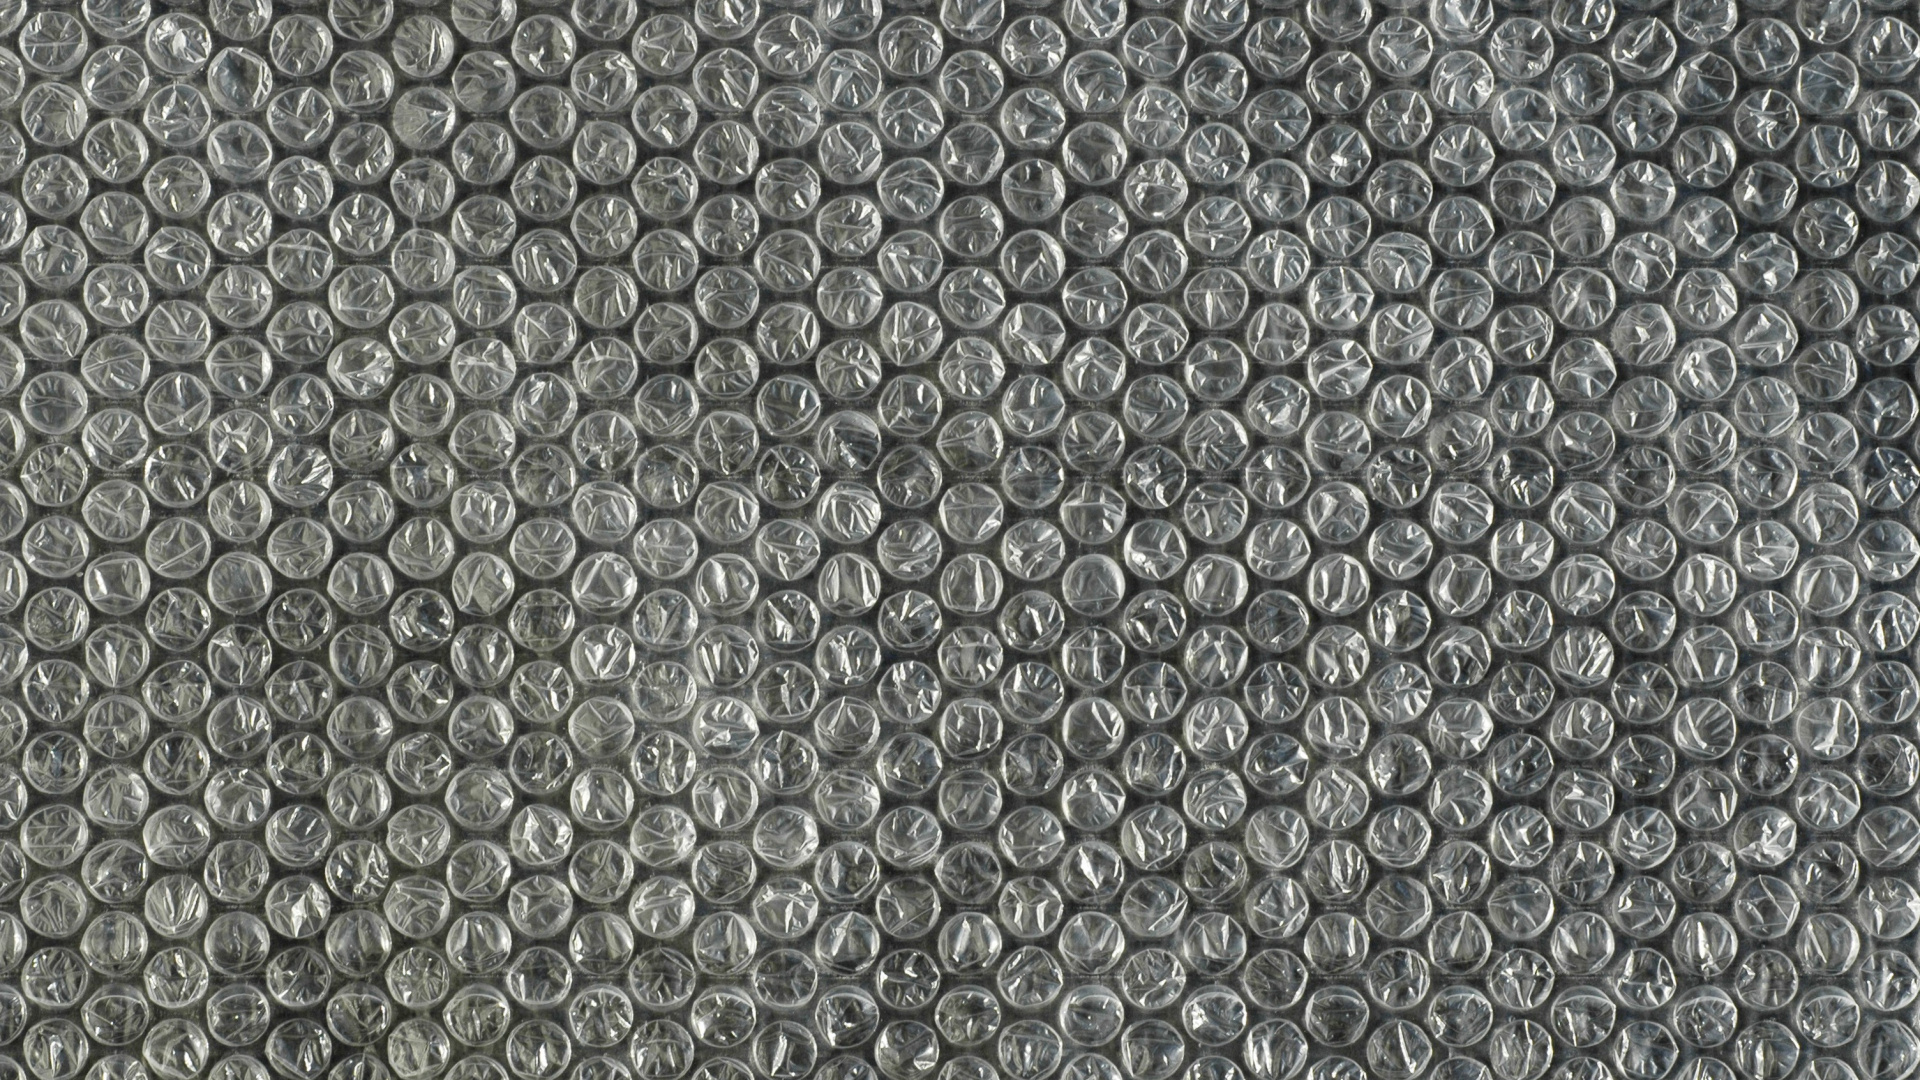 Carreaux de Céramique Noir et Blanc. Wallpaper in 1920x1080 Resolution